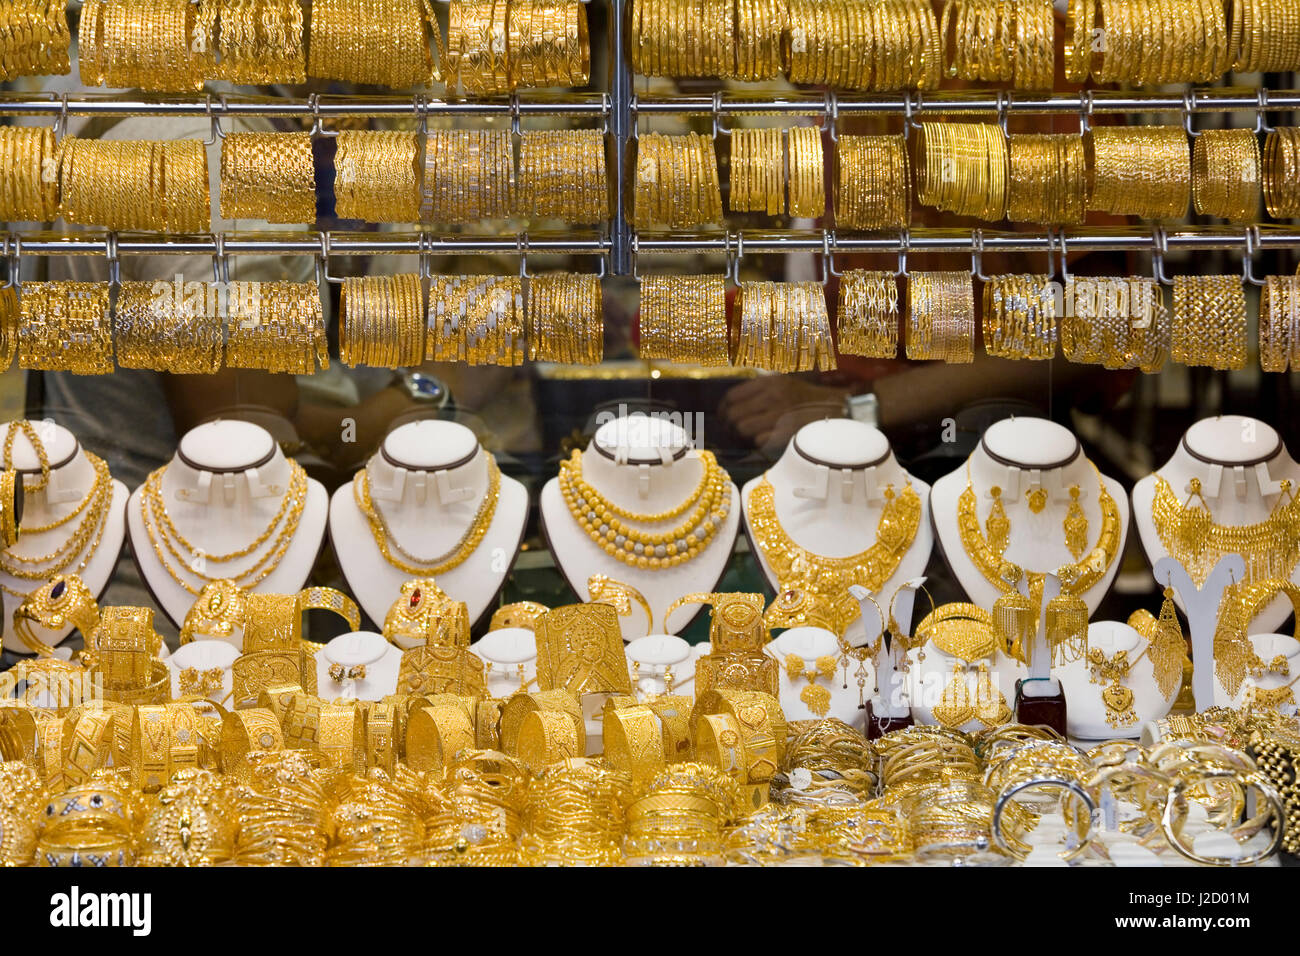 Goldschmuck zu verkaufen, Dubai, Vereinigte Arabische Emirate  Stockfotografie - Alamy